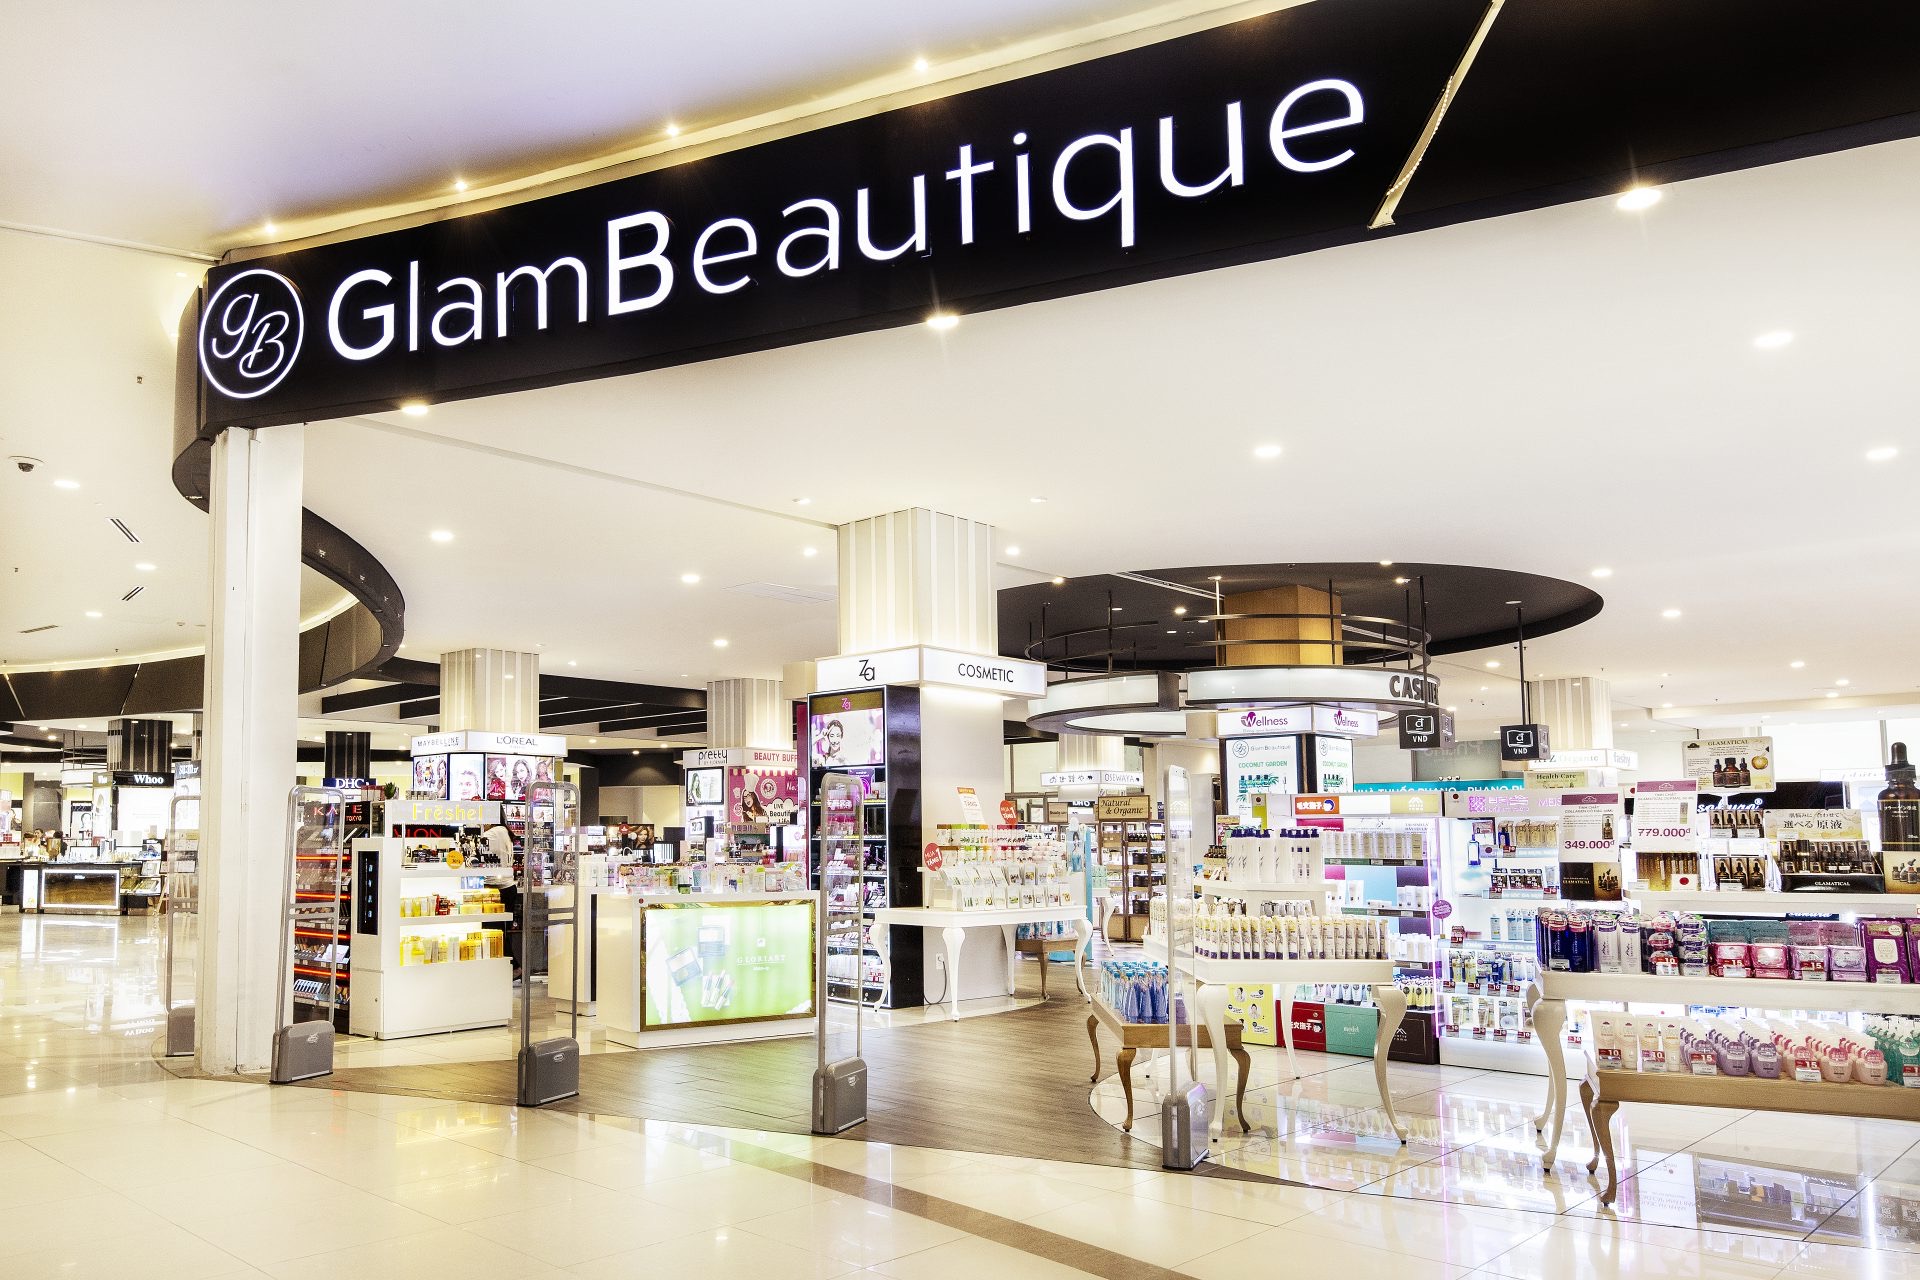 Cửa hàng Glam Beautique của AEON cung cấp đa dạng các sản phẩm như thực phẩm chức năng, mỹ phẩm, sản phẩm vệ sinh cá nhân,...